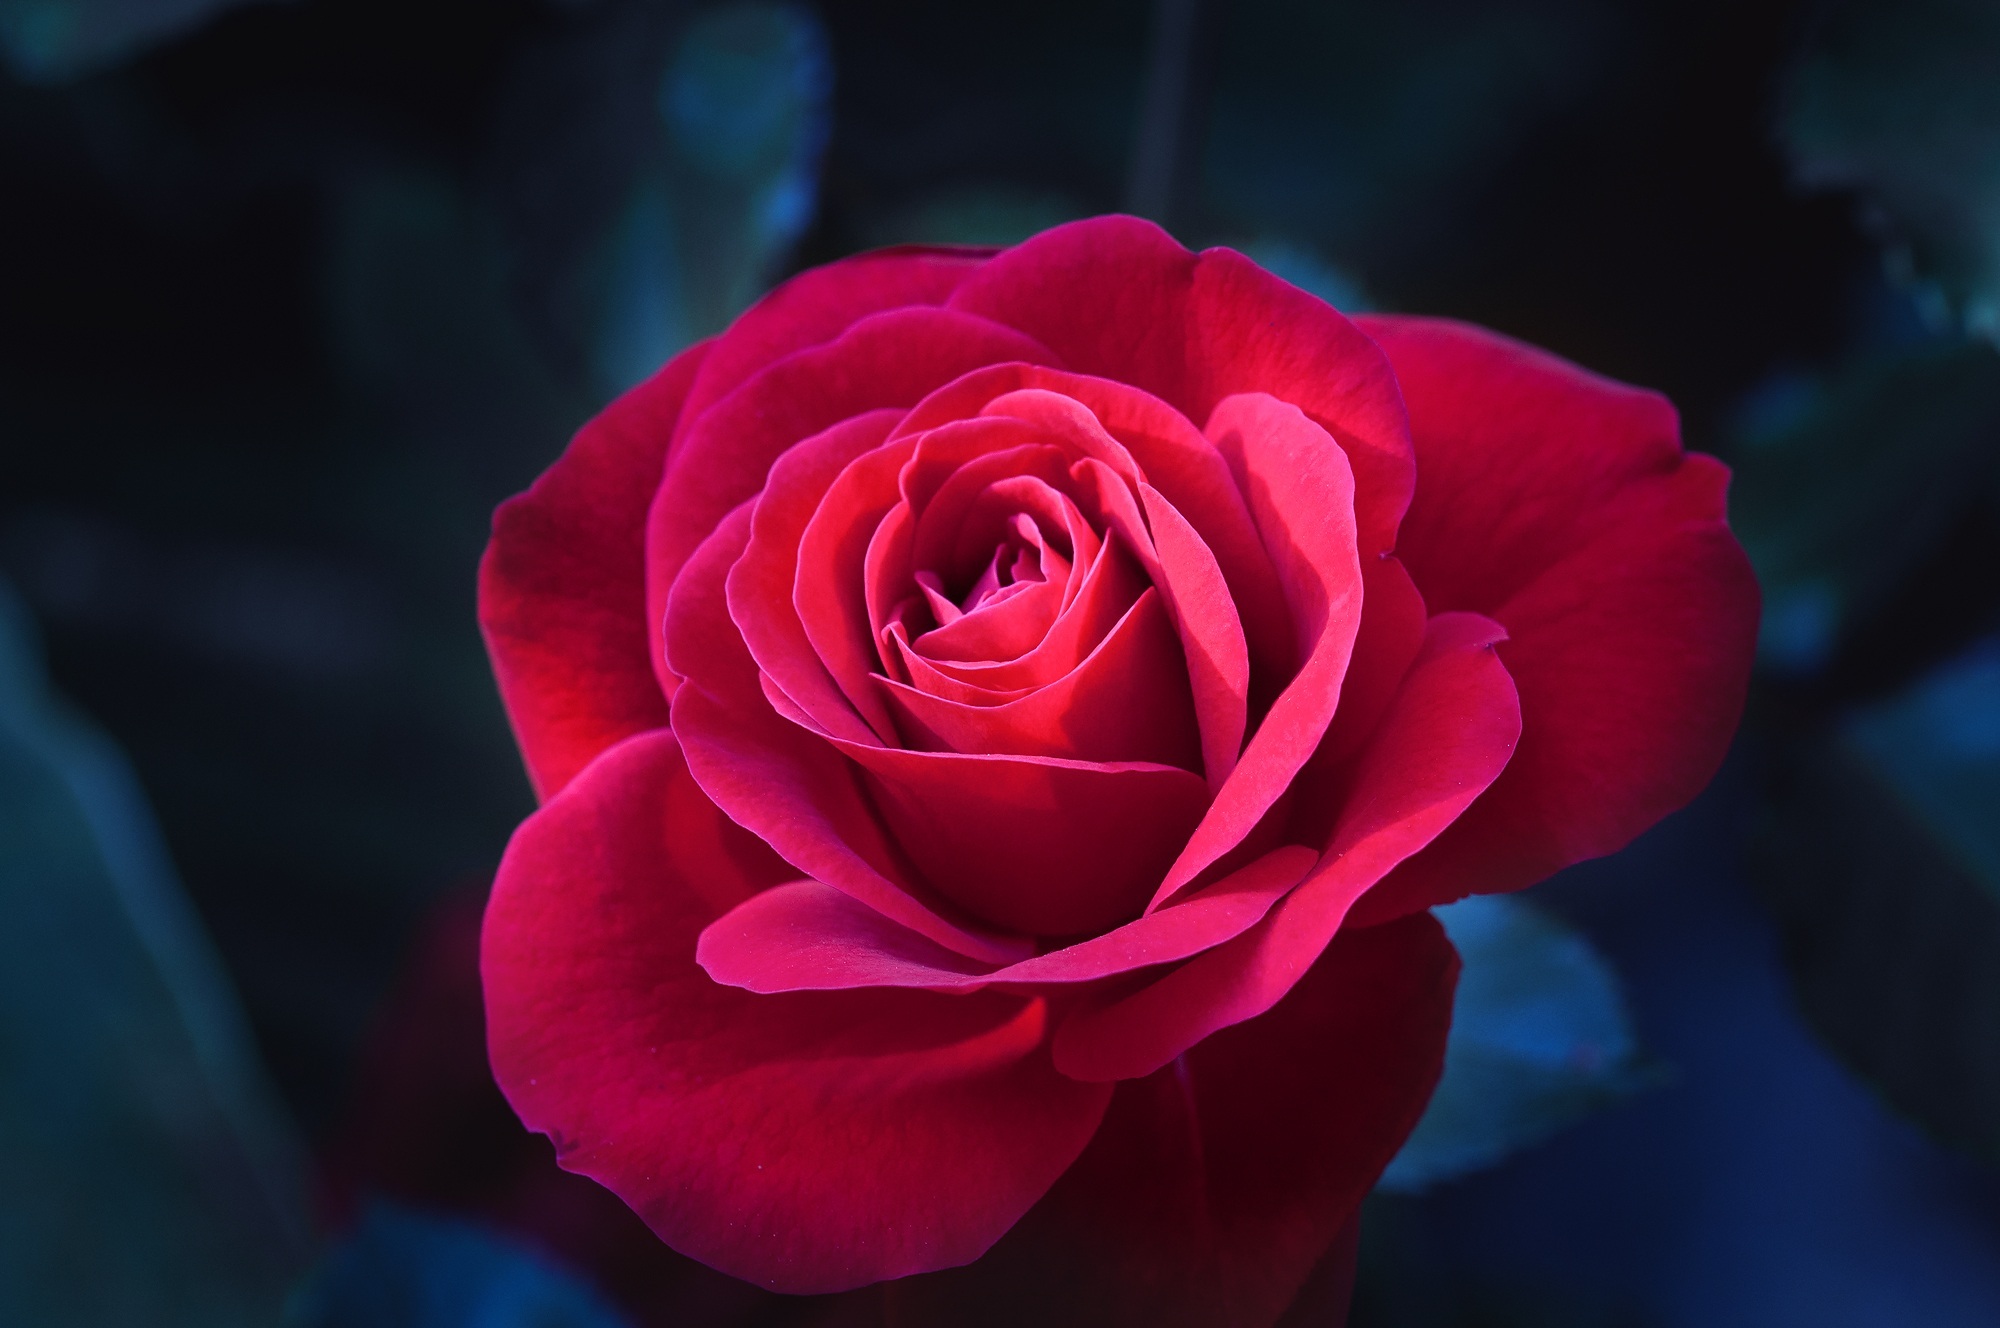 夜色下静静绽放的红玫瑰